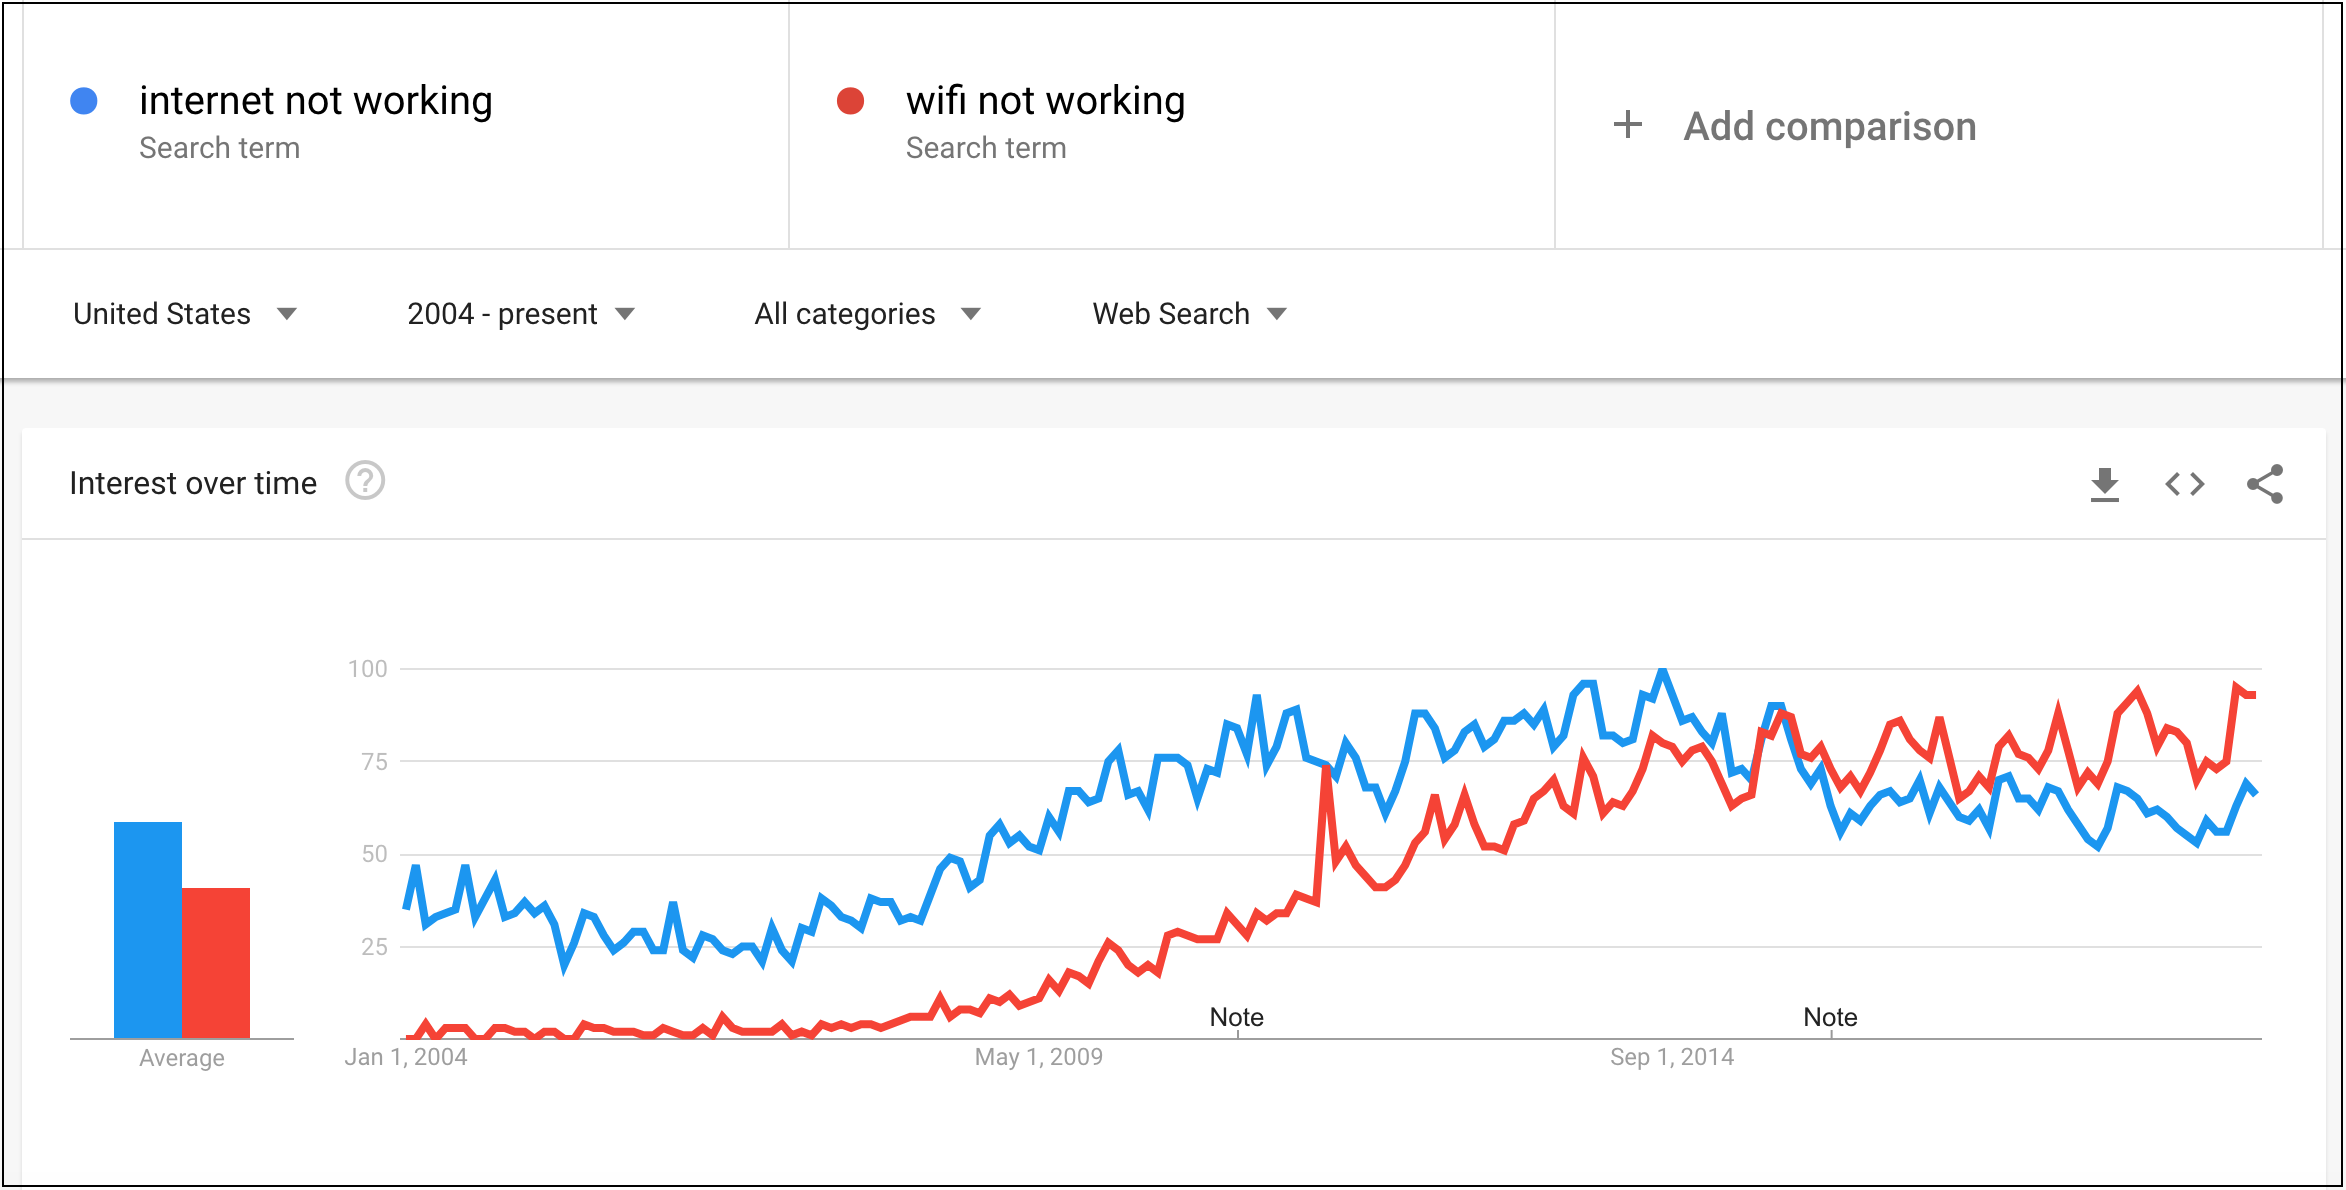 Google Trends Search Volume Comparison: WiFi vs. Internet